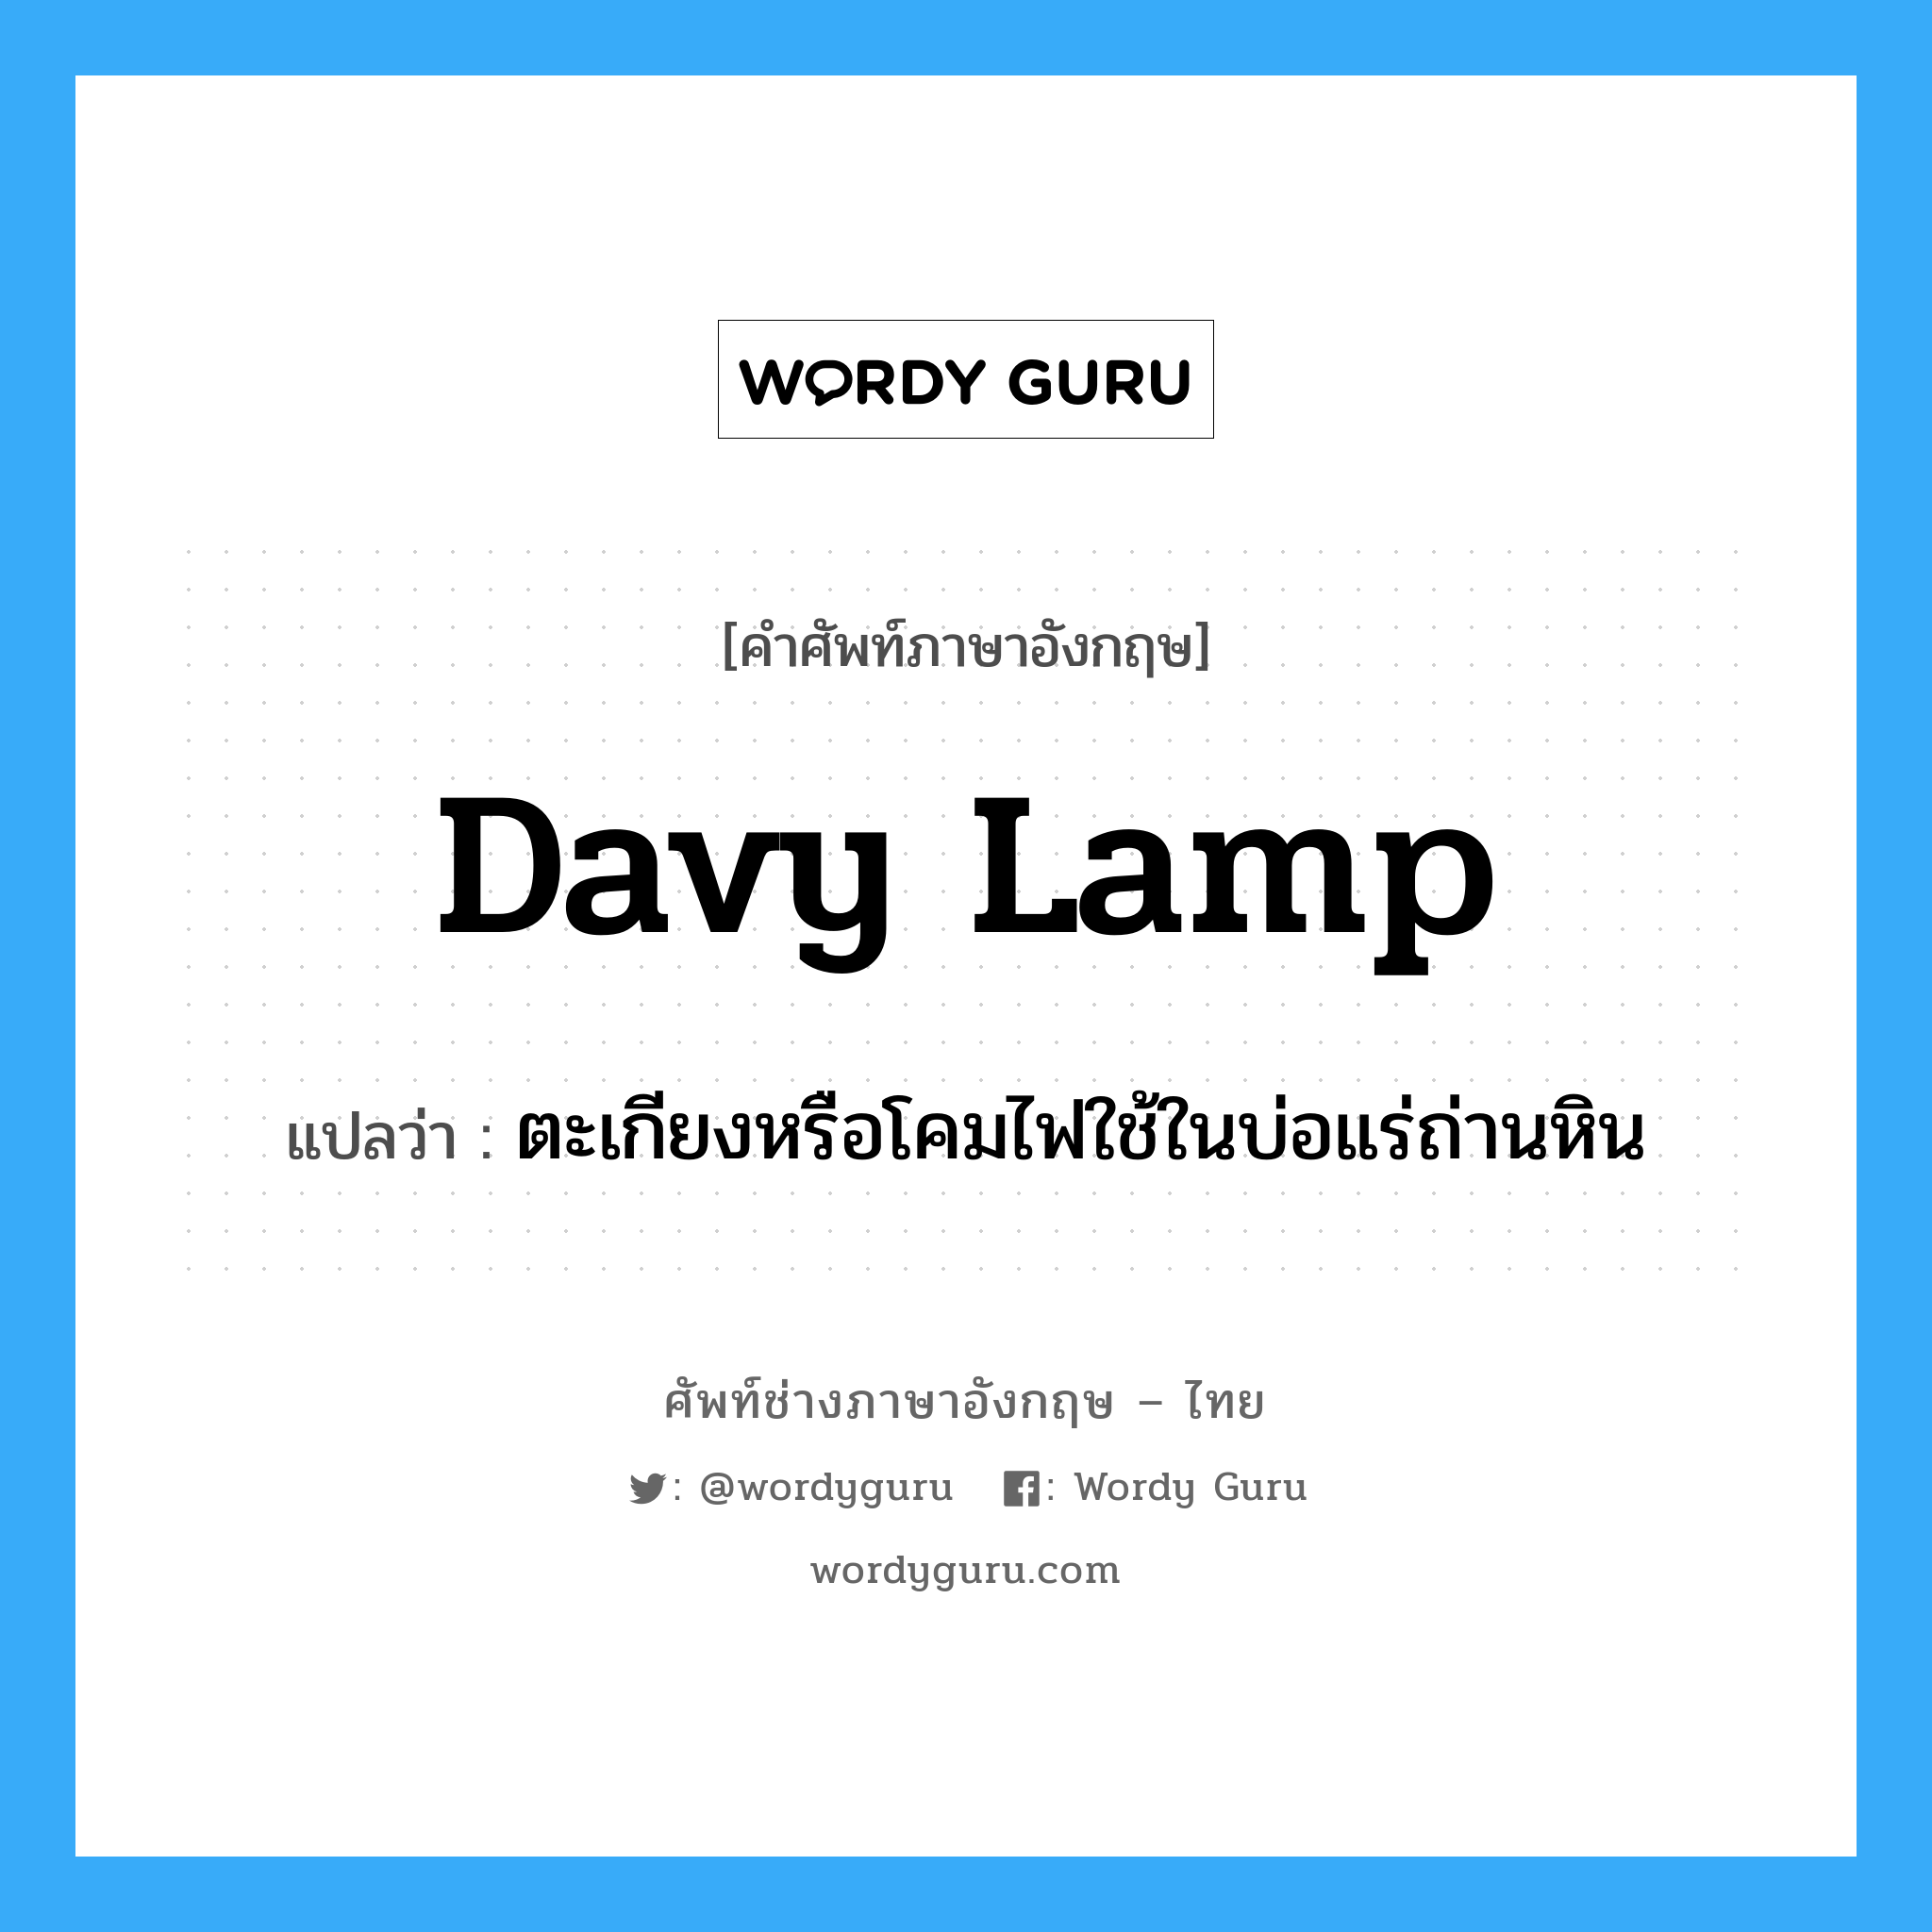 ตะเกียงหรือโคมไฟใช้ในบ่อแร่ถ่านหิน ภาษาอังกฤษ?, คำศัพท์ช่างภาษาอังกฤษ - ไทย ตะเกียงหรือโคมไฟใช้ในบ่อแร่ถ่านหิน คำศัพท์ภาษาอังกฤษ ตะเกียงหรือโคมไฟใช้ในบ่อแร่ถ่านหิน แปลว่า Davy lamp